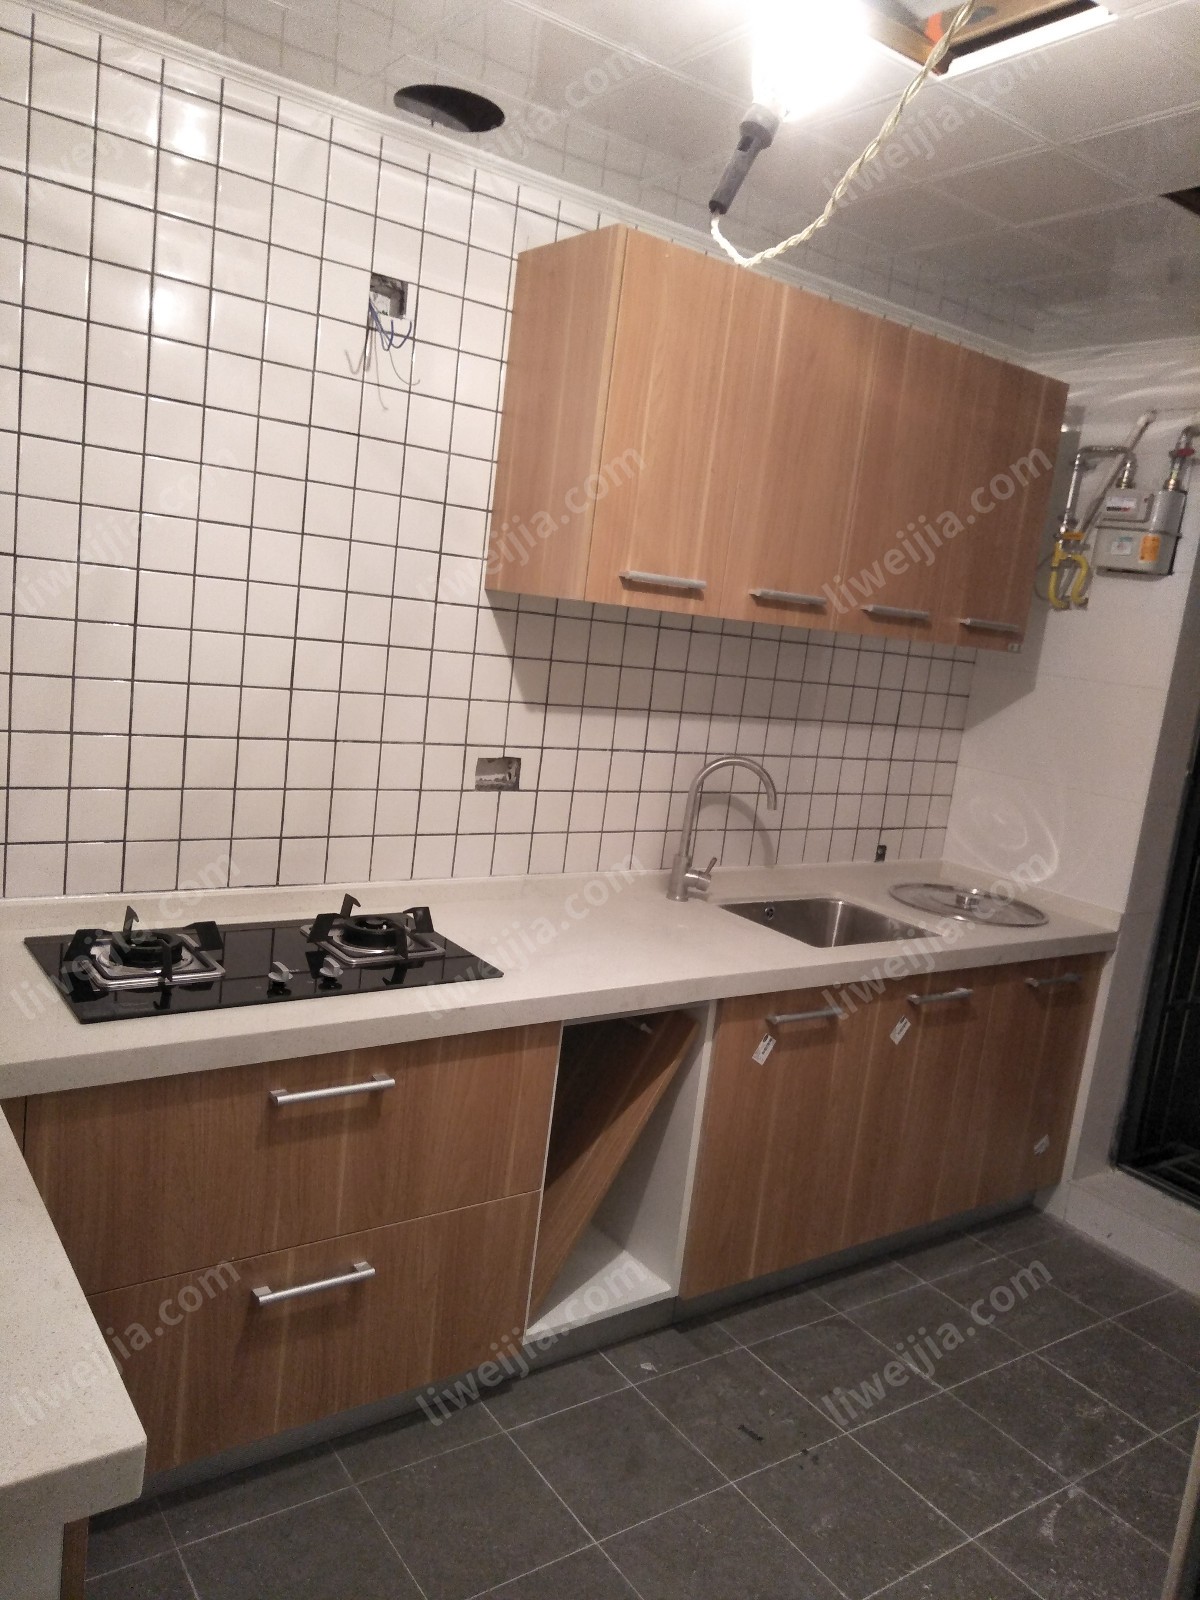 这是一个比较标准的L字厨房，各个功能分区得到了有效的区分，柜子装好后，活动的空间还是很充裕的。